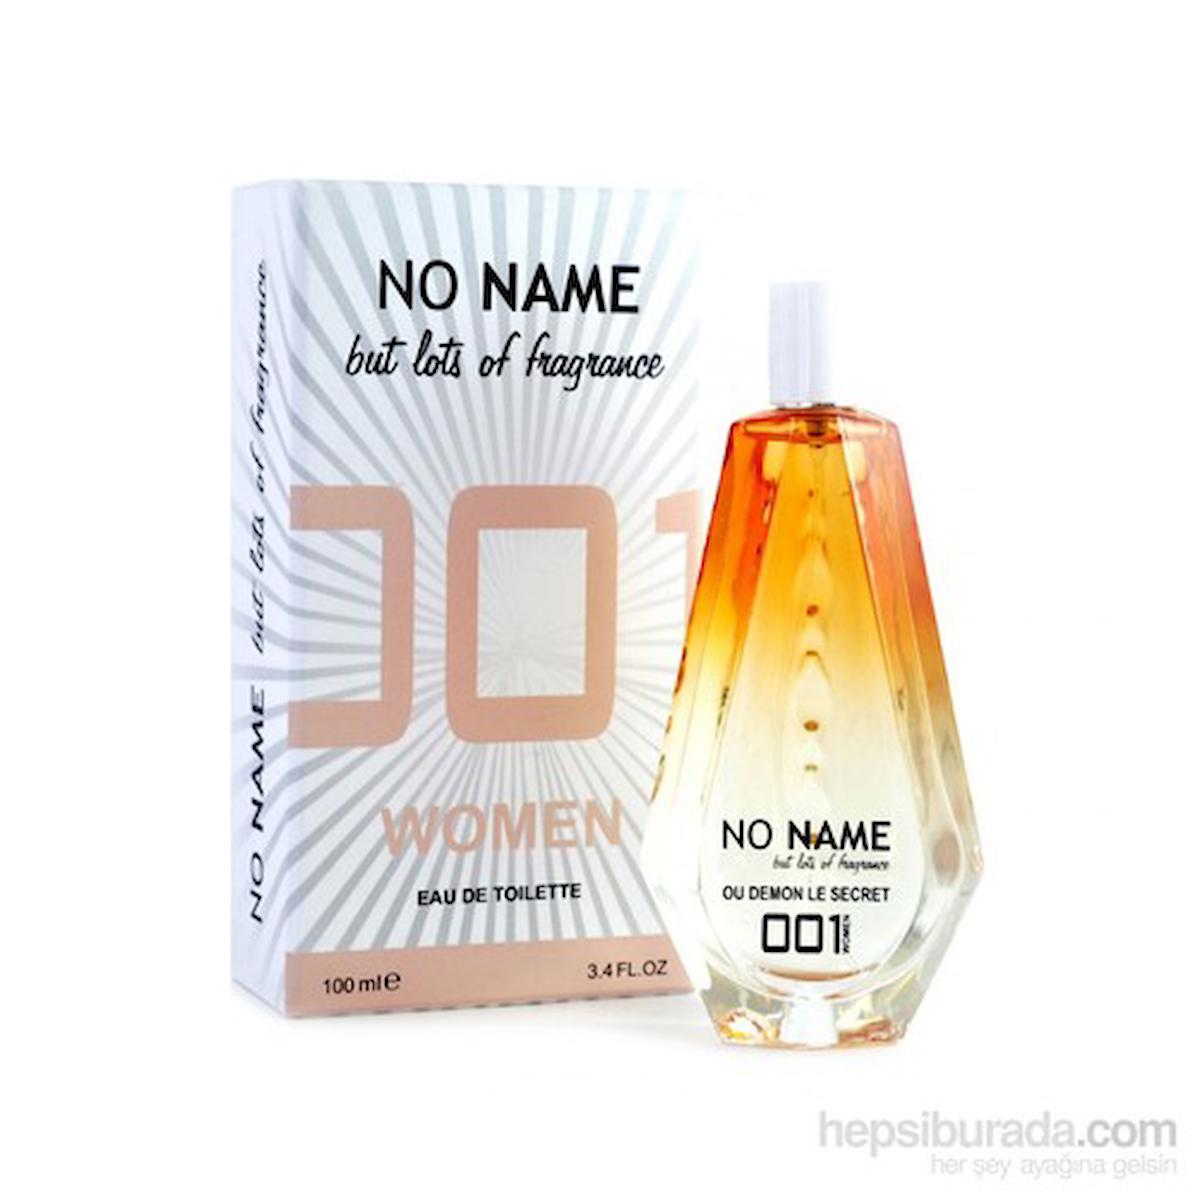 Noname 001 Ou Demon Le Secret EDT Kadın Parfüm 100 ml